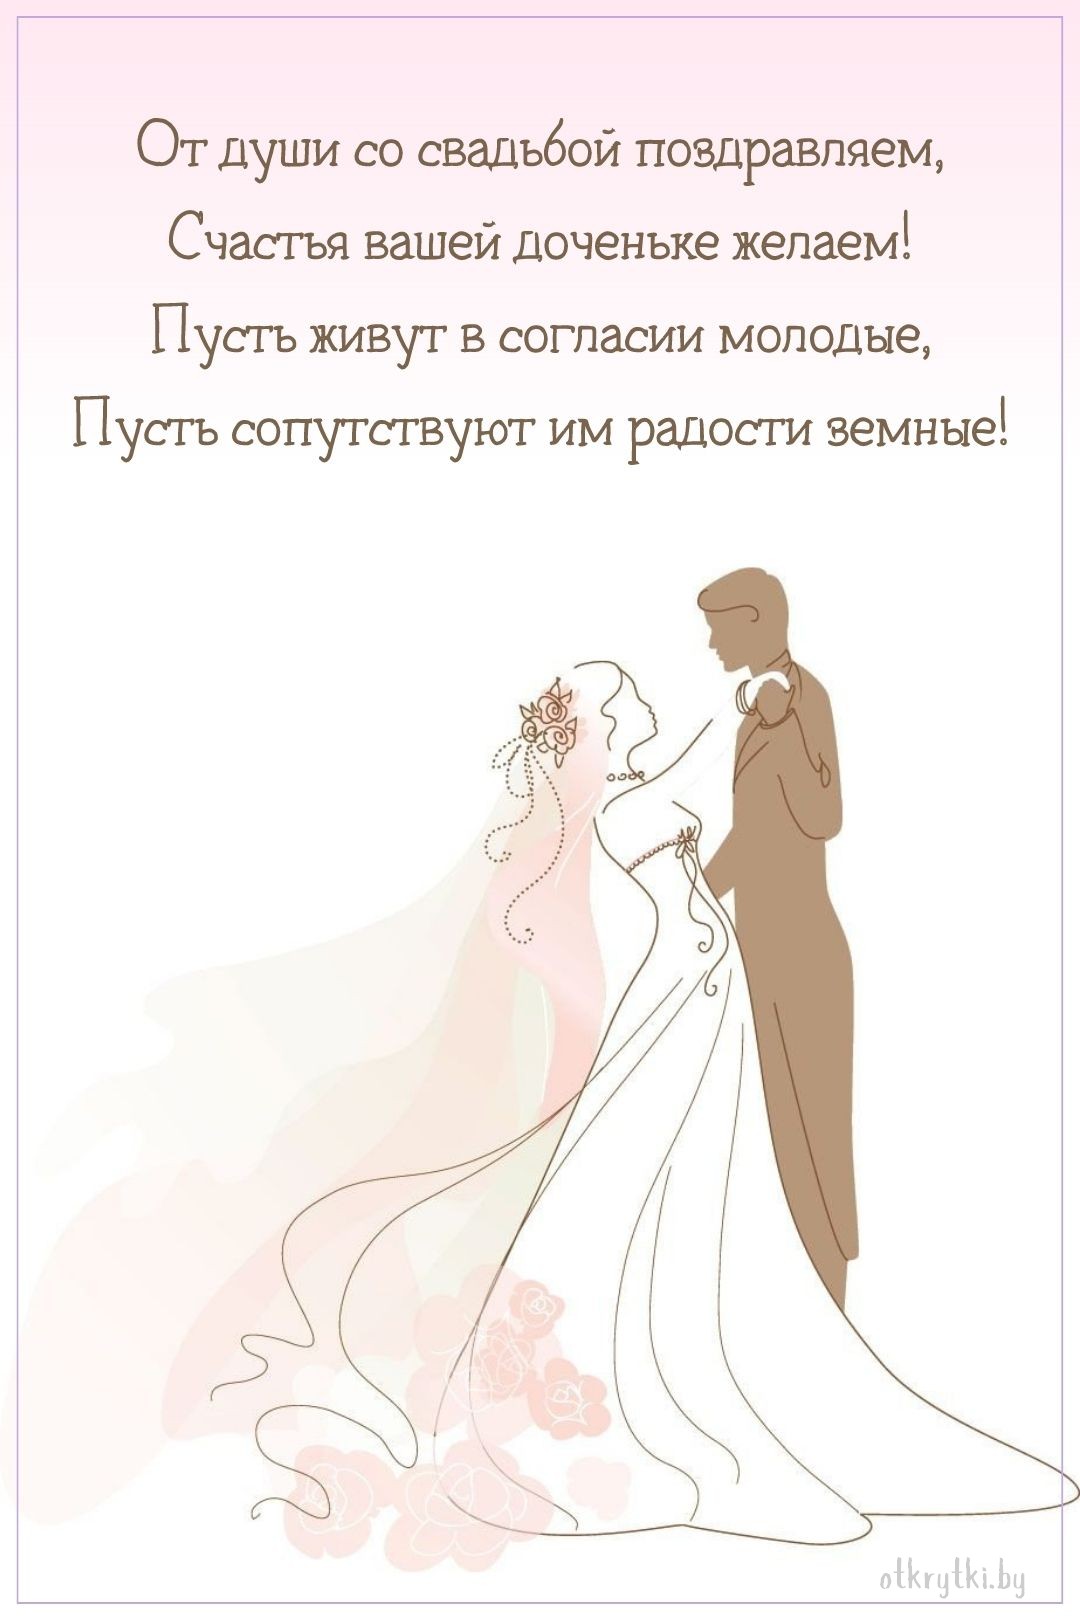 Поздравительная открытка со свадьбой дочери